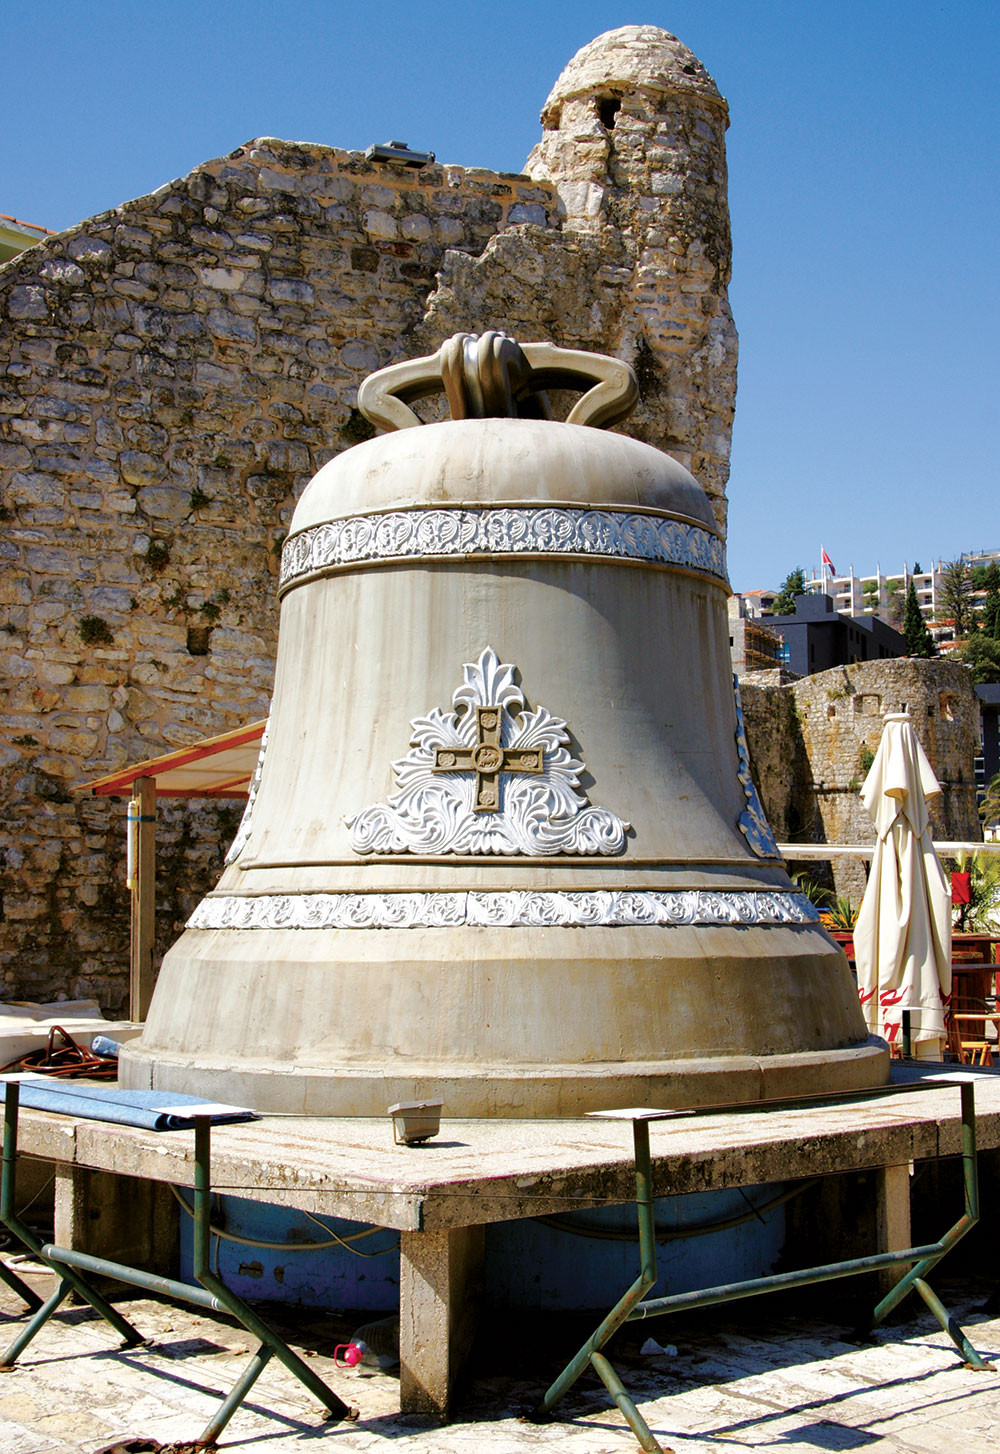 U slovenskim predanjima, pesmama i legendama veoma čest motiv su čudesna zvona, odnosno njihova zvonjava